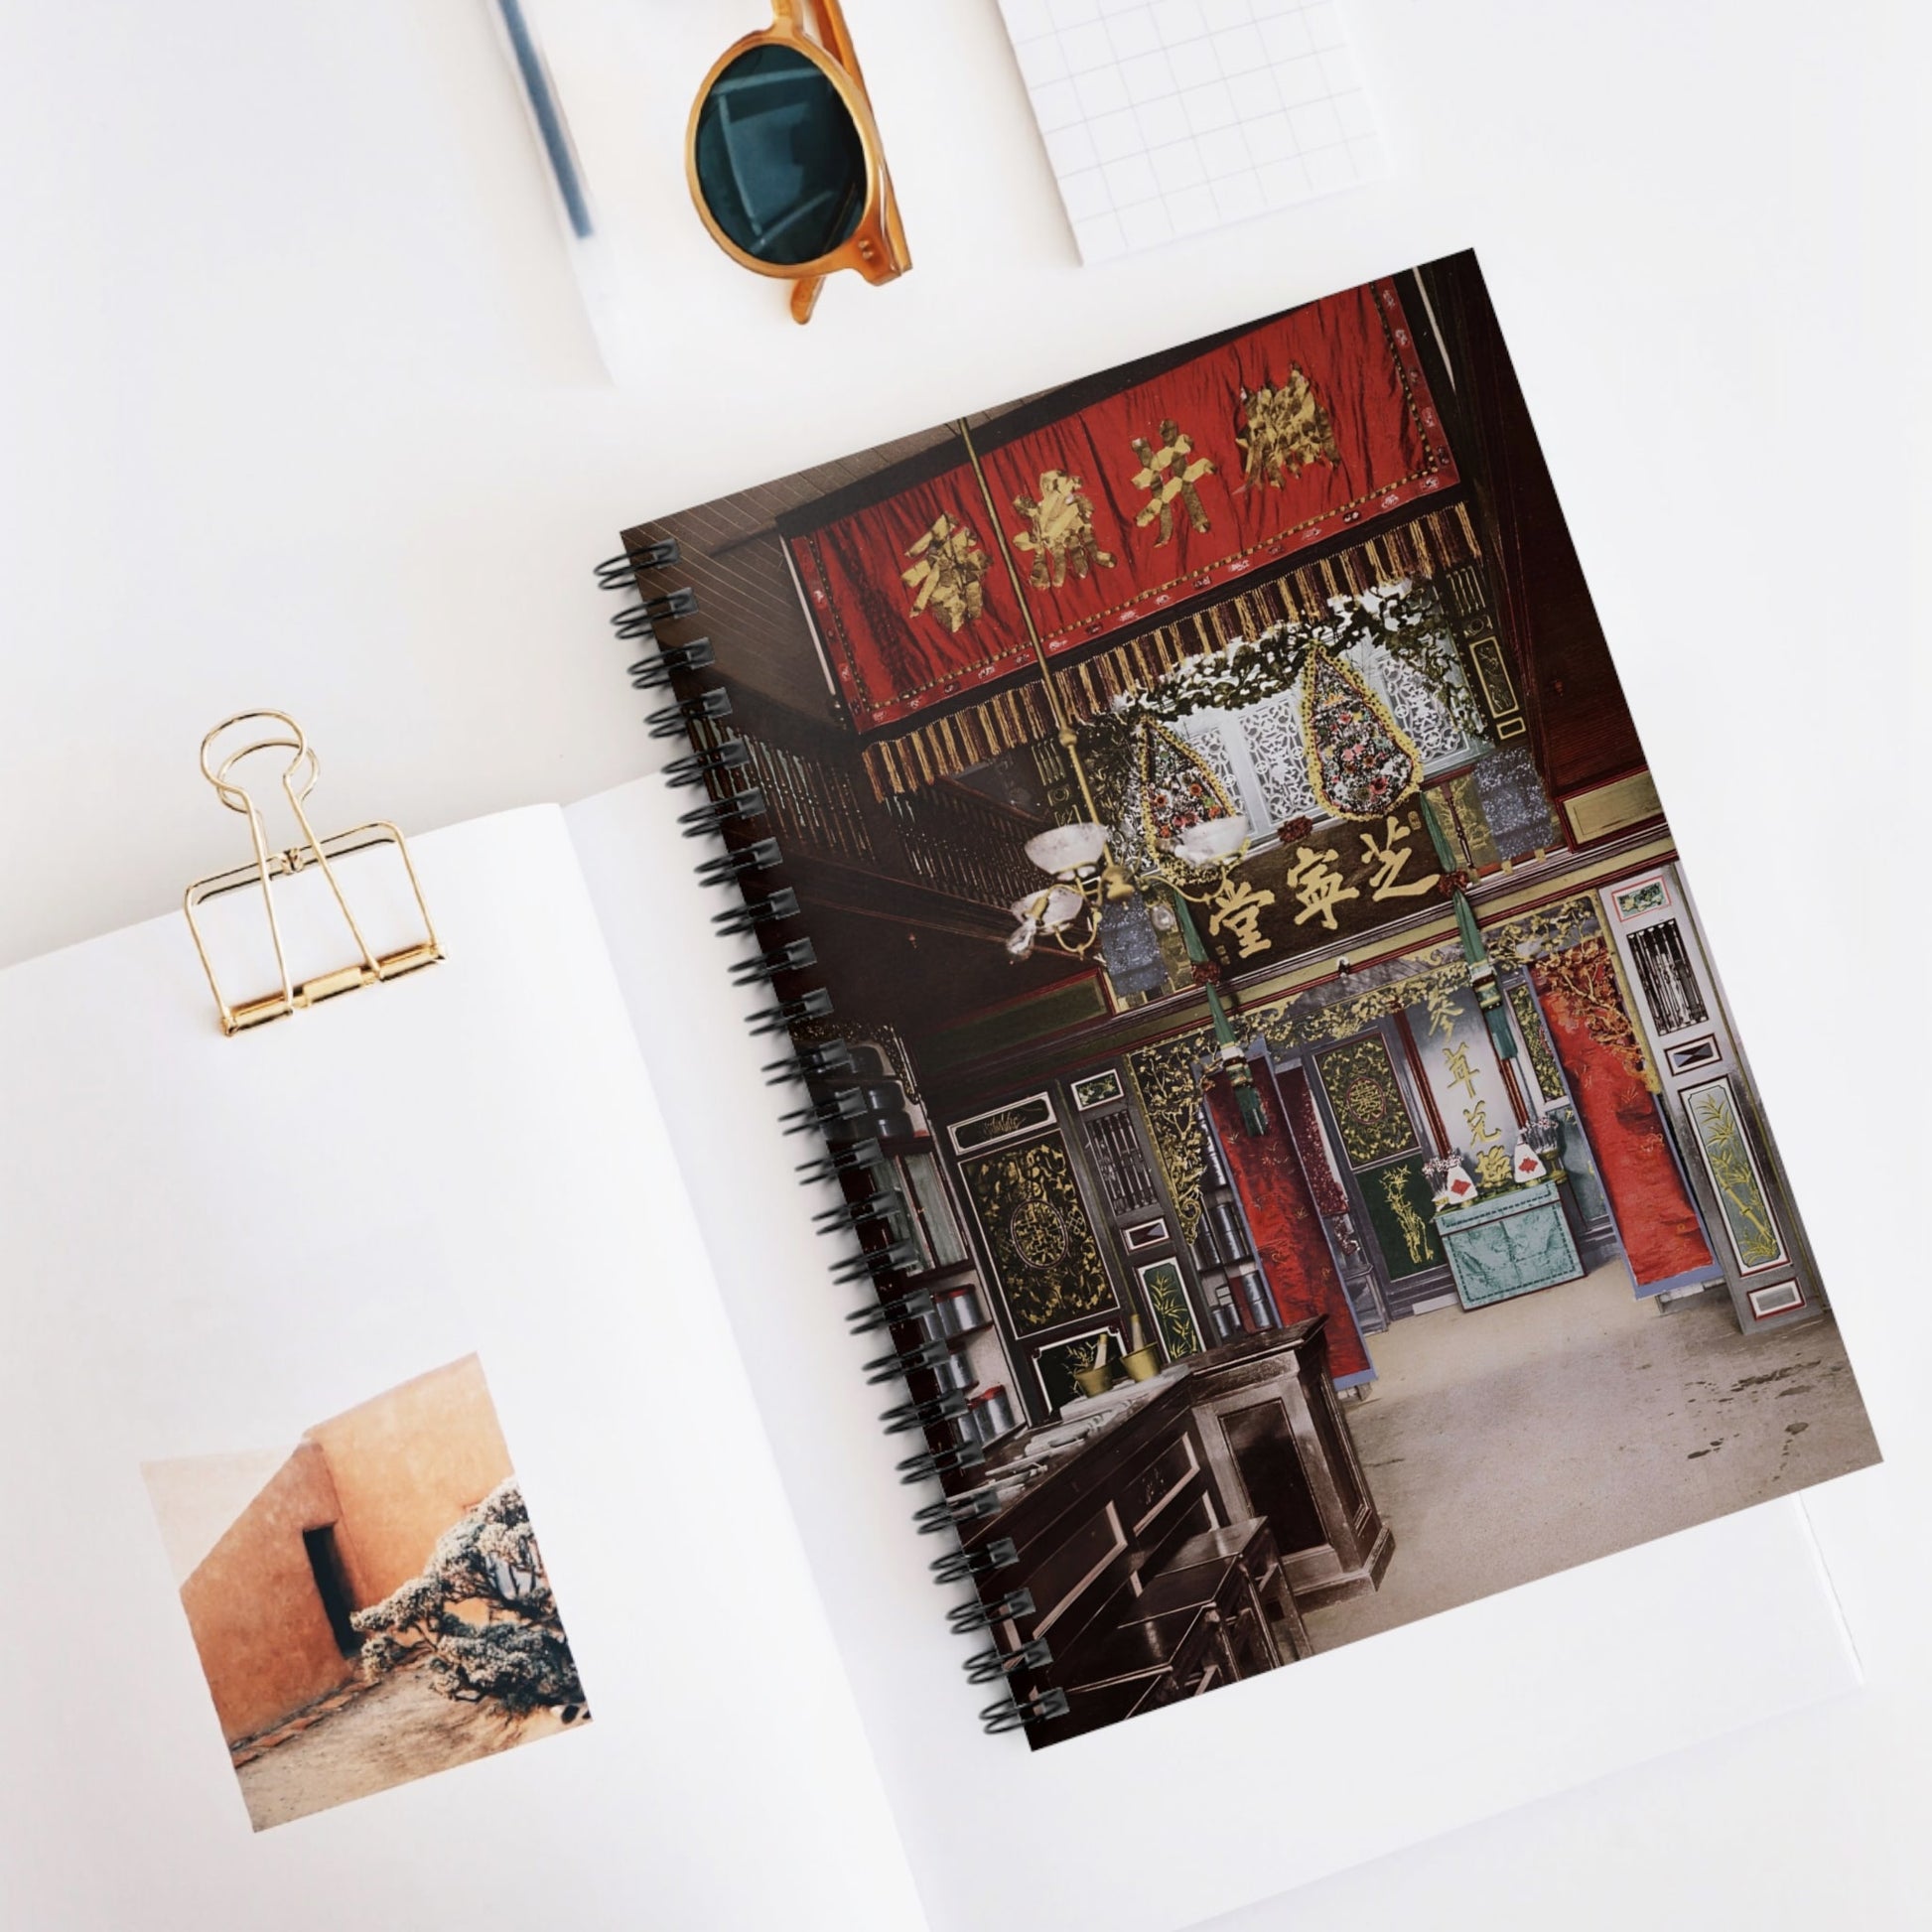 Chinatown Spiral Notebook Displayed on Desk